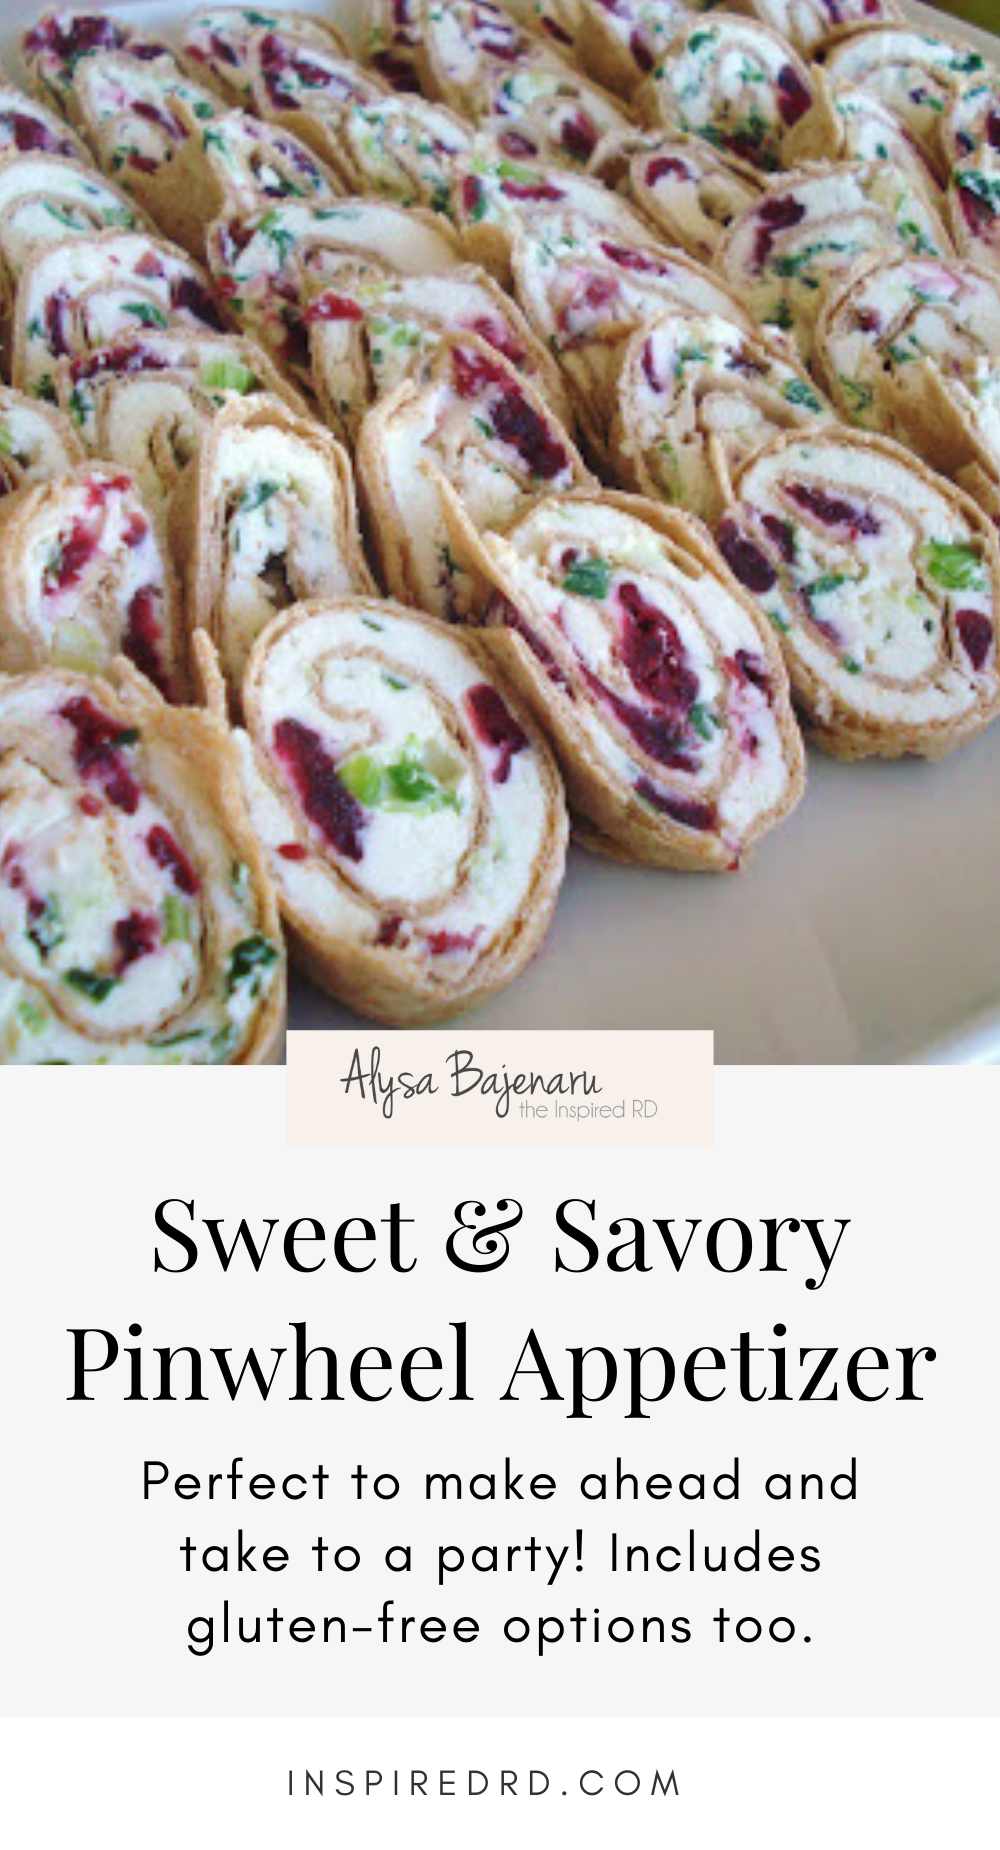 Sweet & Savory Pinwheel Appetizer